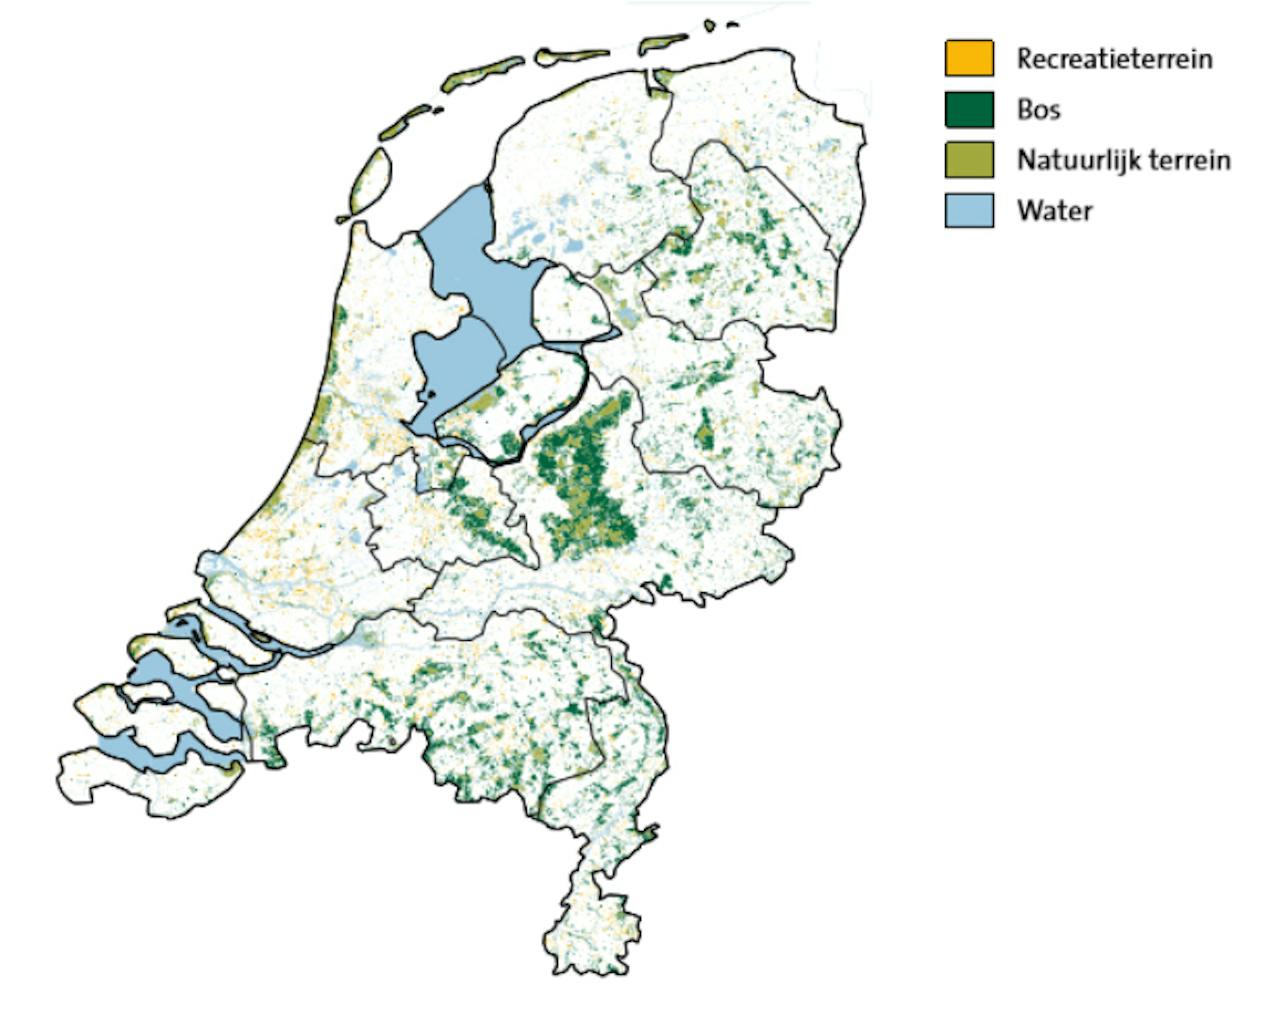 Een kaart van Nederland. Recreatieterrein, natuurlijk terrein en bos zijn met kleuren ingetekend.